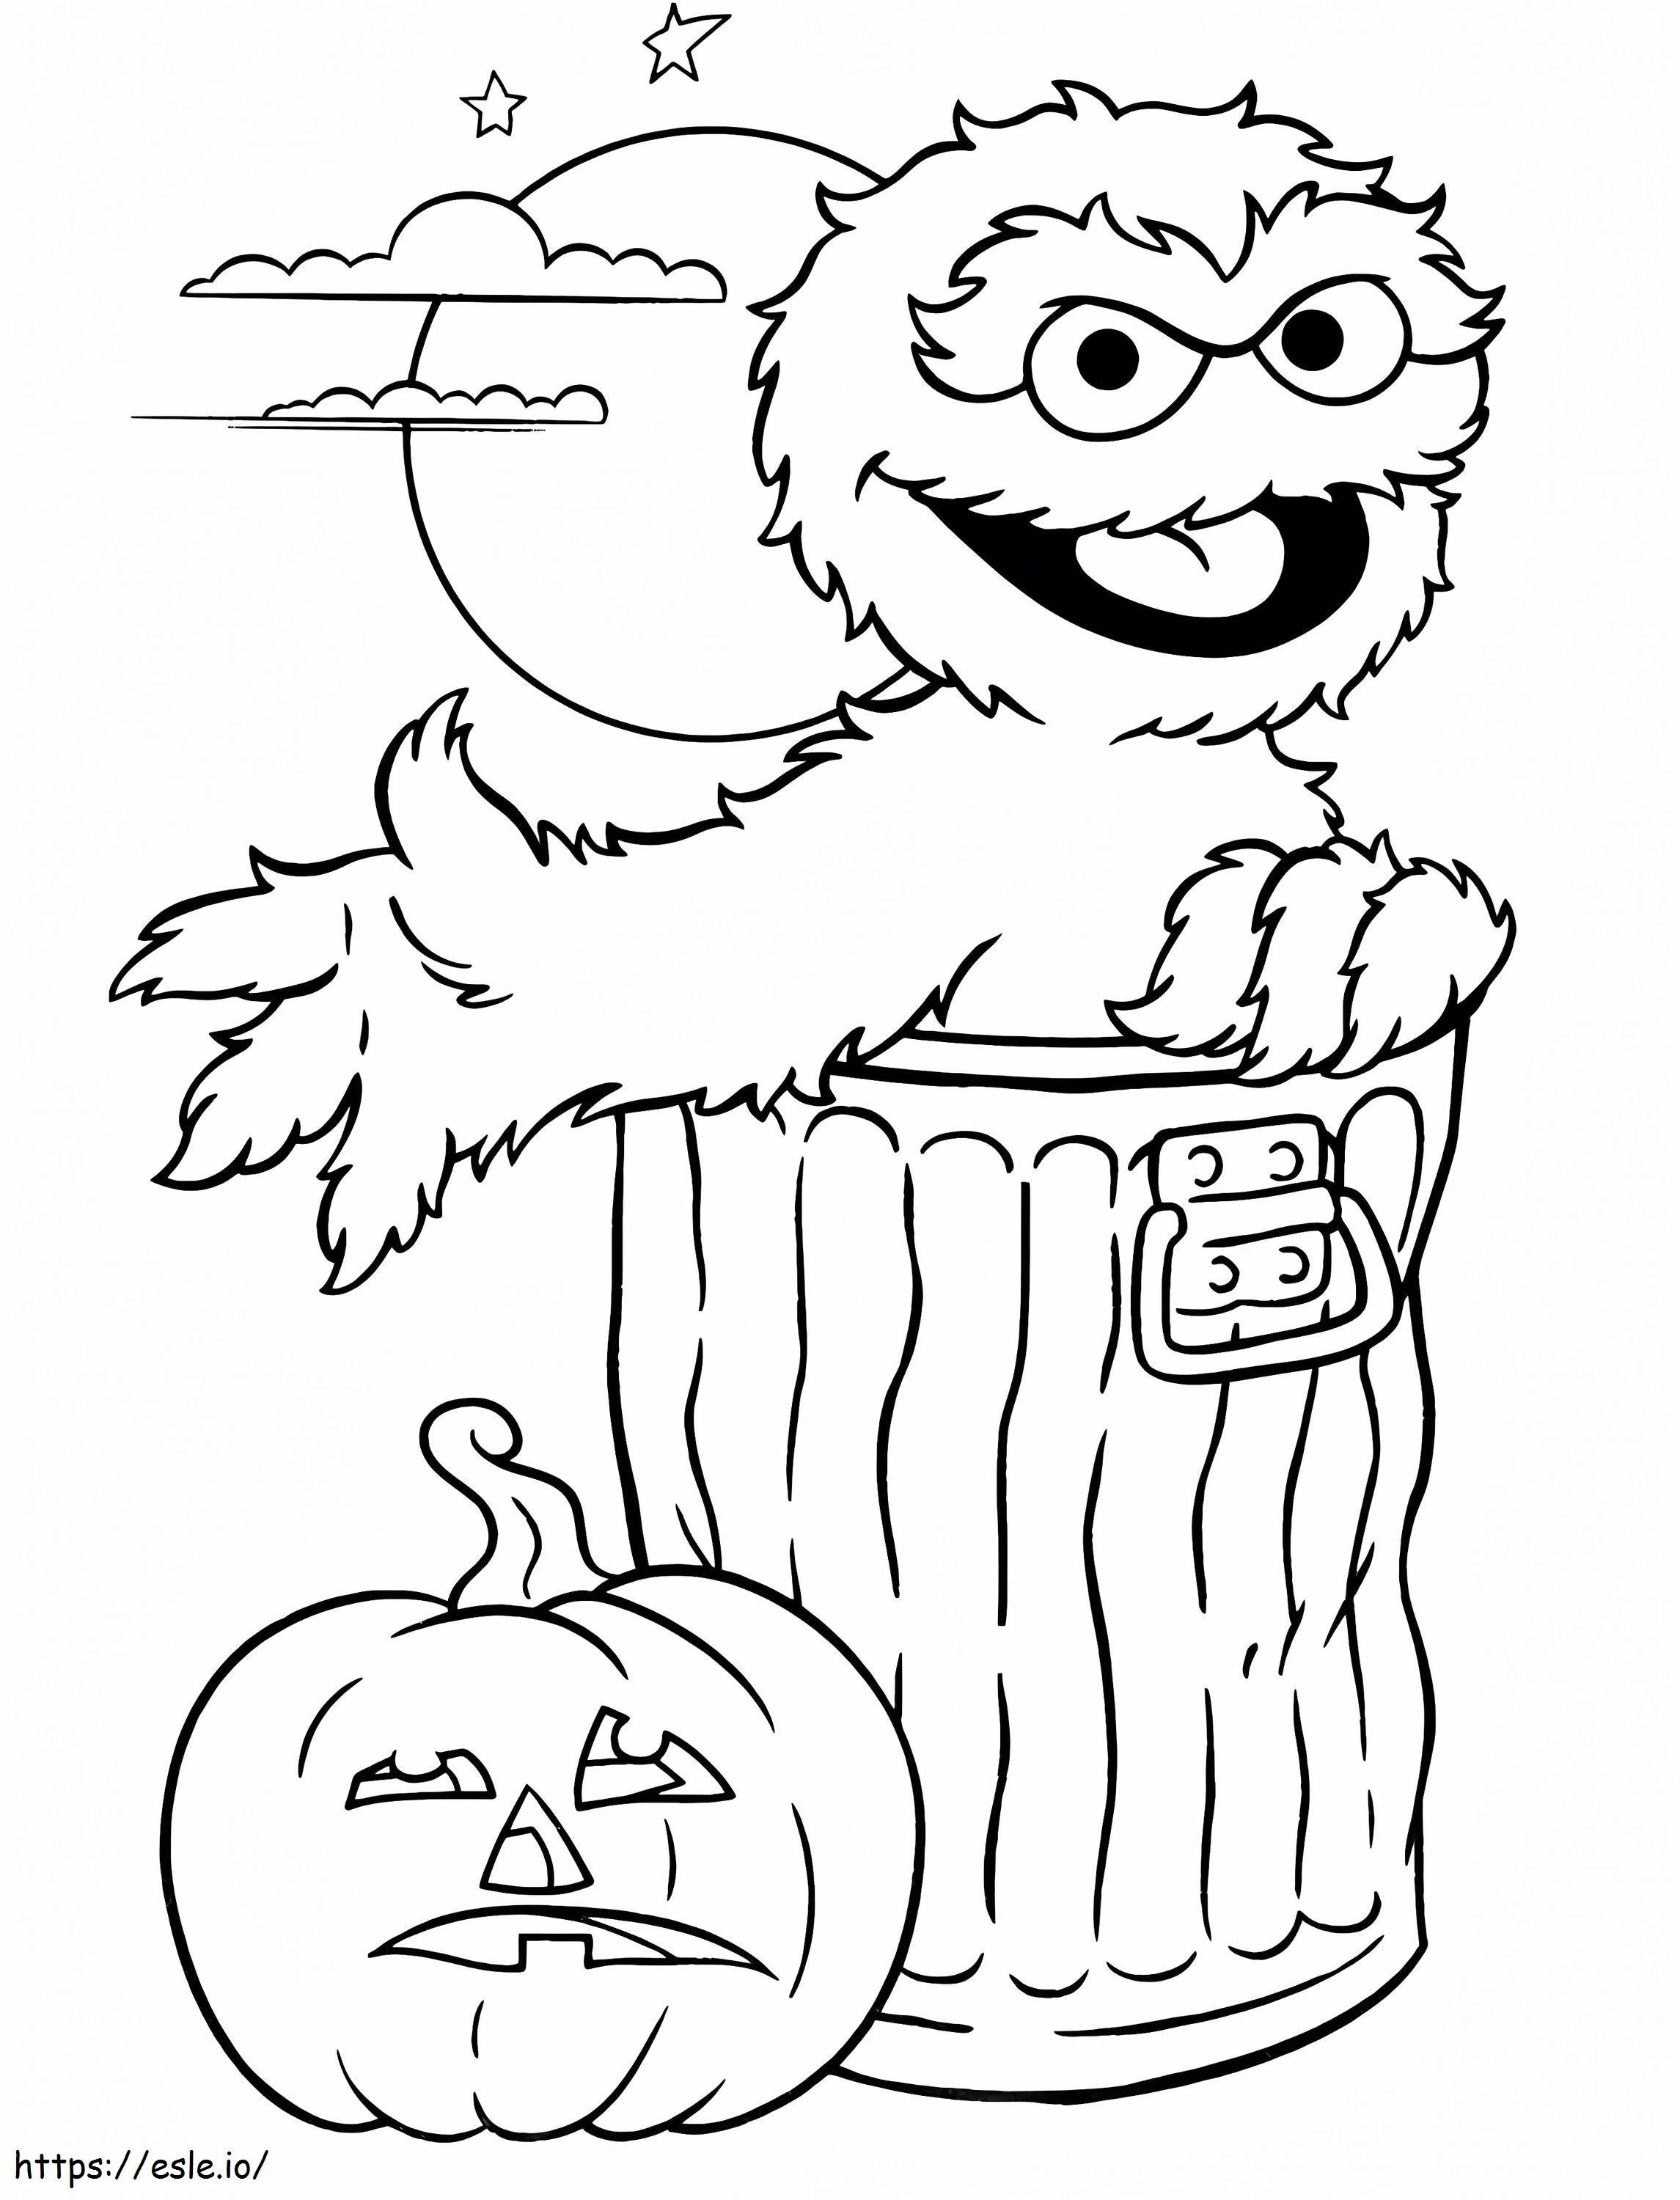 1582166761 Winnie The Pooh Cadılar Bayramı Motosiklet Kitabı Jurassic World Crayola Dev Kitaplar Cankurtaran Sayfası Hayvanlar Alemi Güreş Sevimli Baykuş Zen Boyama Ressam Günleri Anna Çocuklar İçin boyama